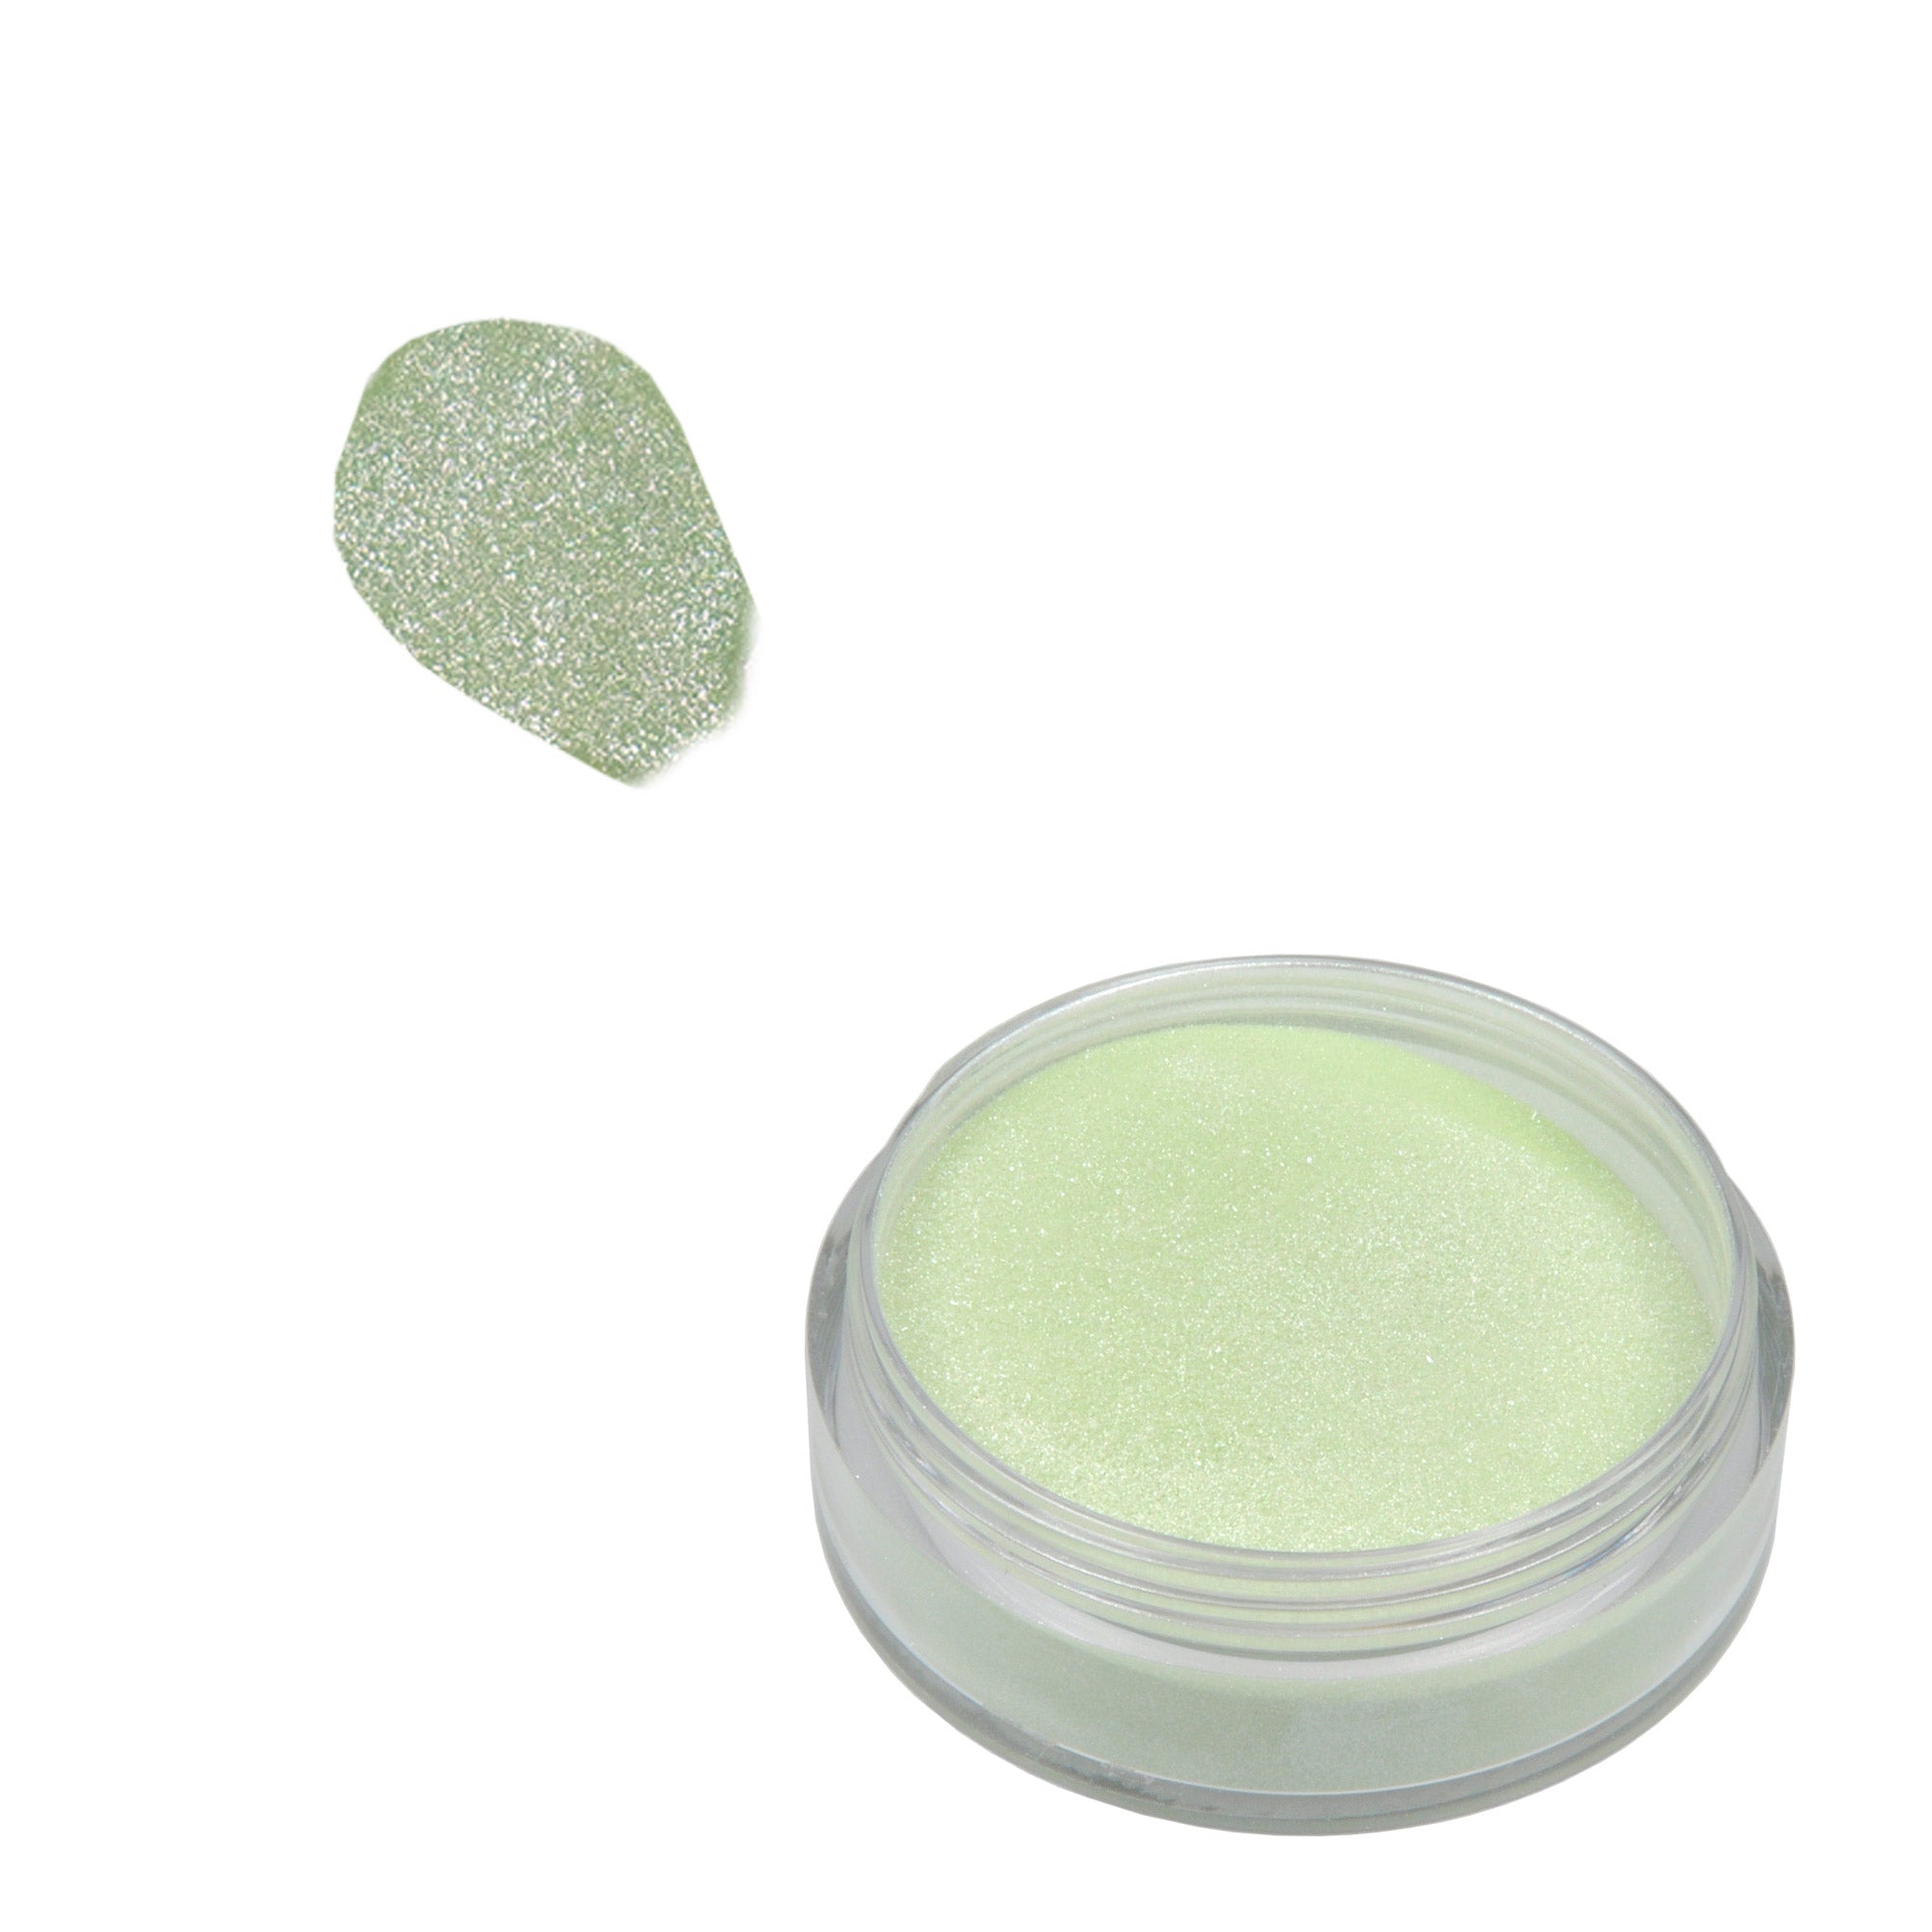 Acrylic Powder 10 g - Sparkling Green